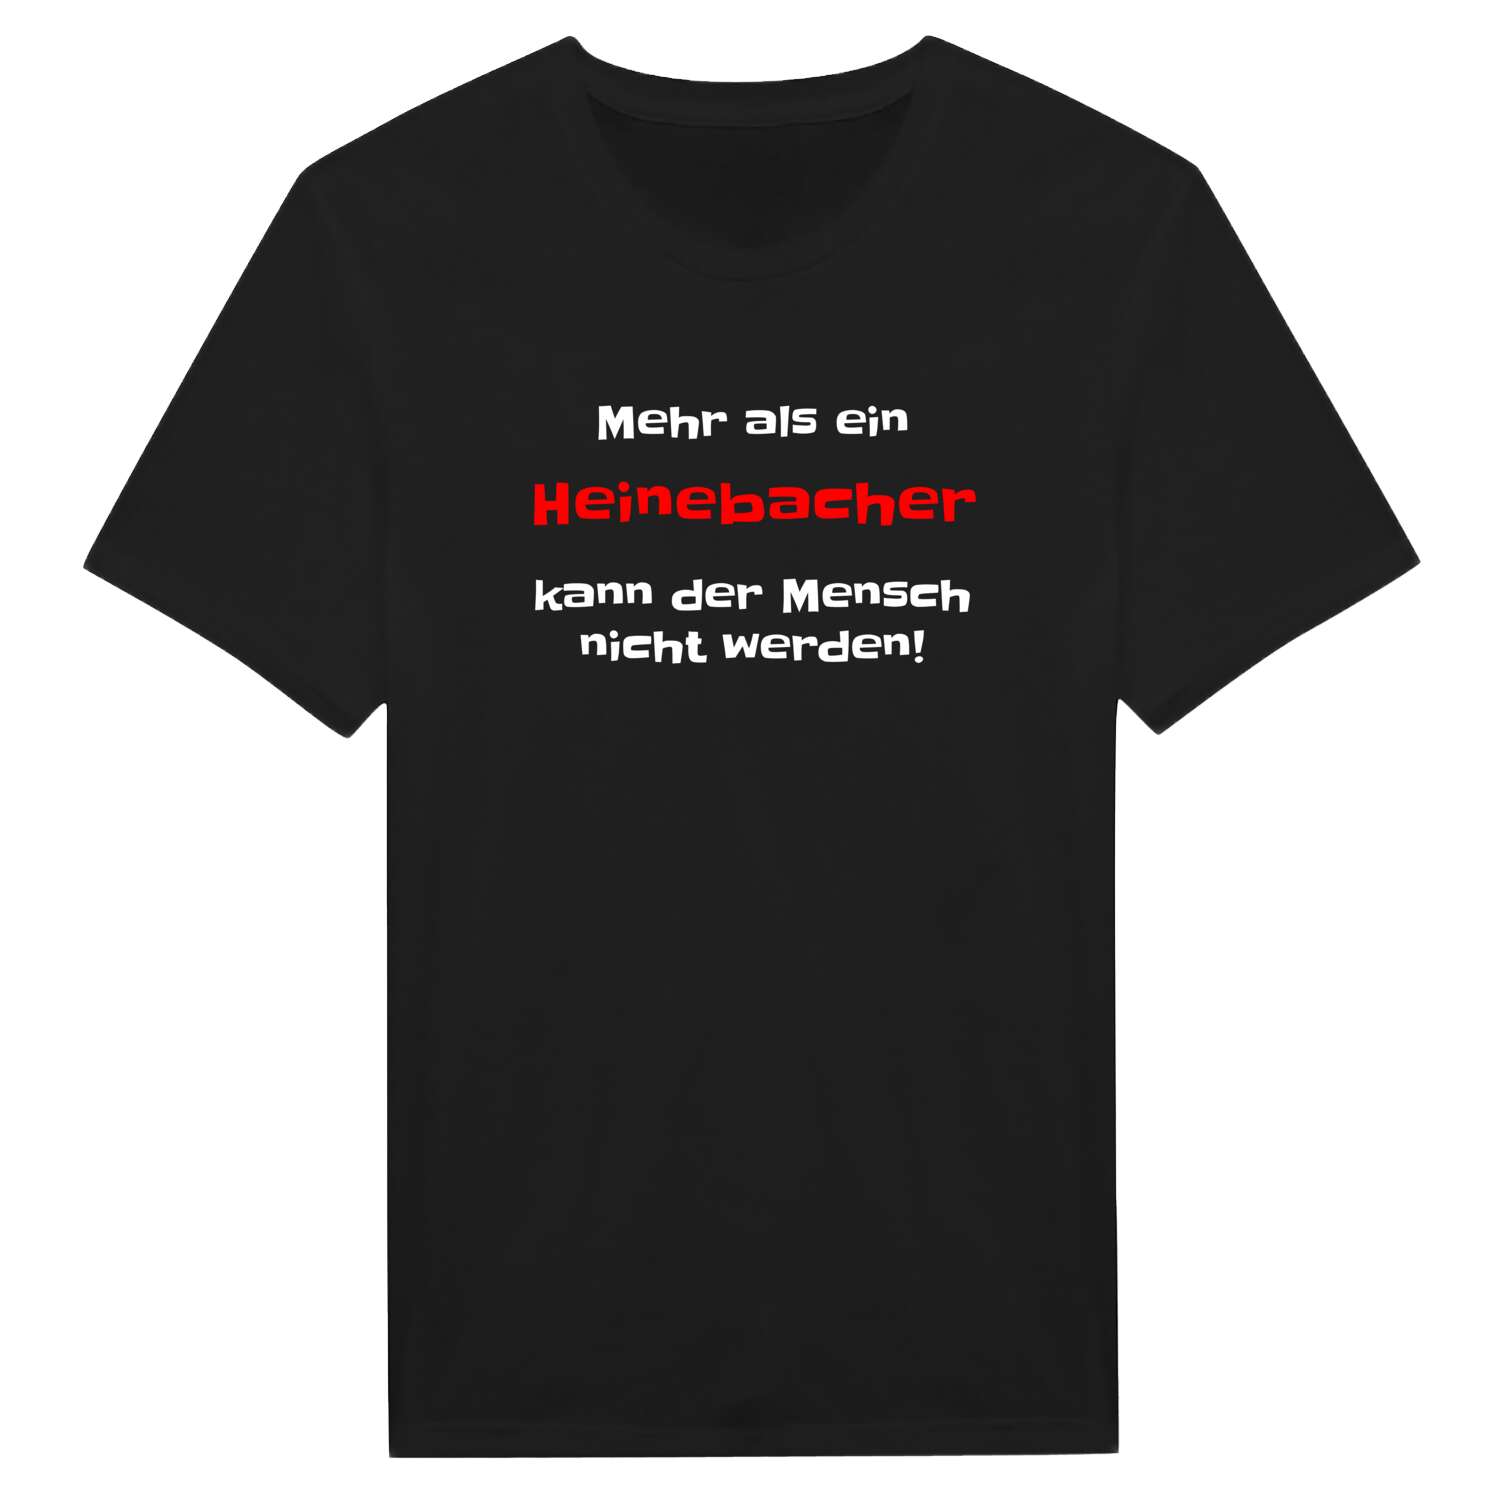 Heinebach T-Shirt »Mehr als ein«